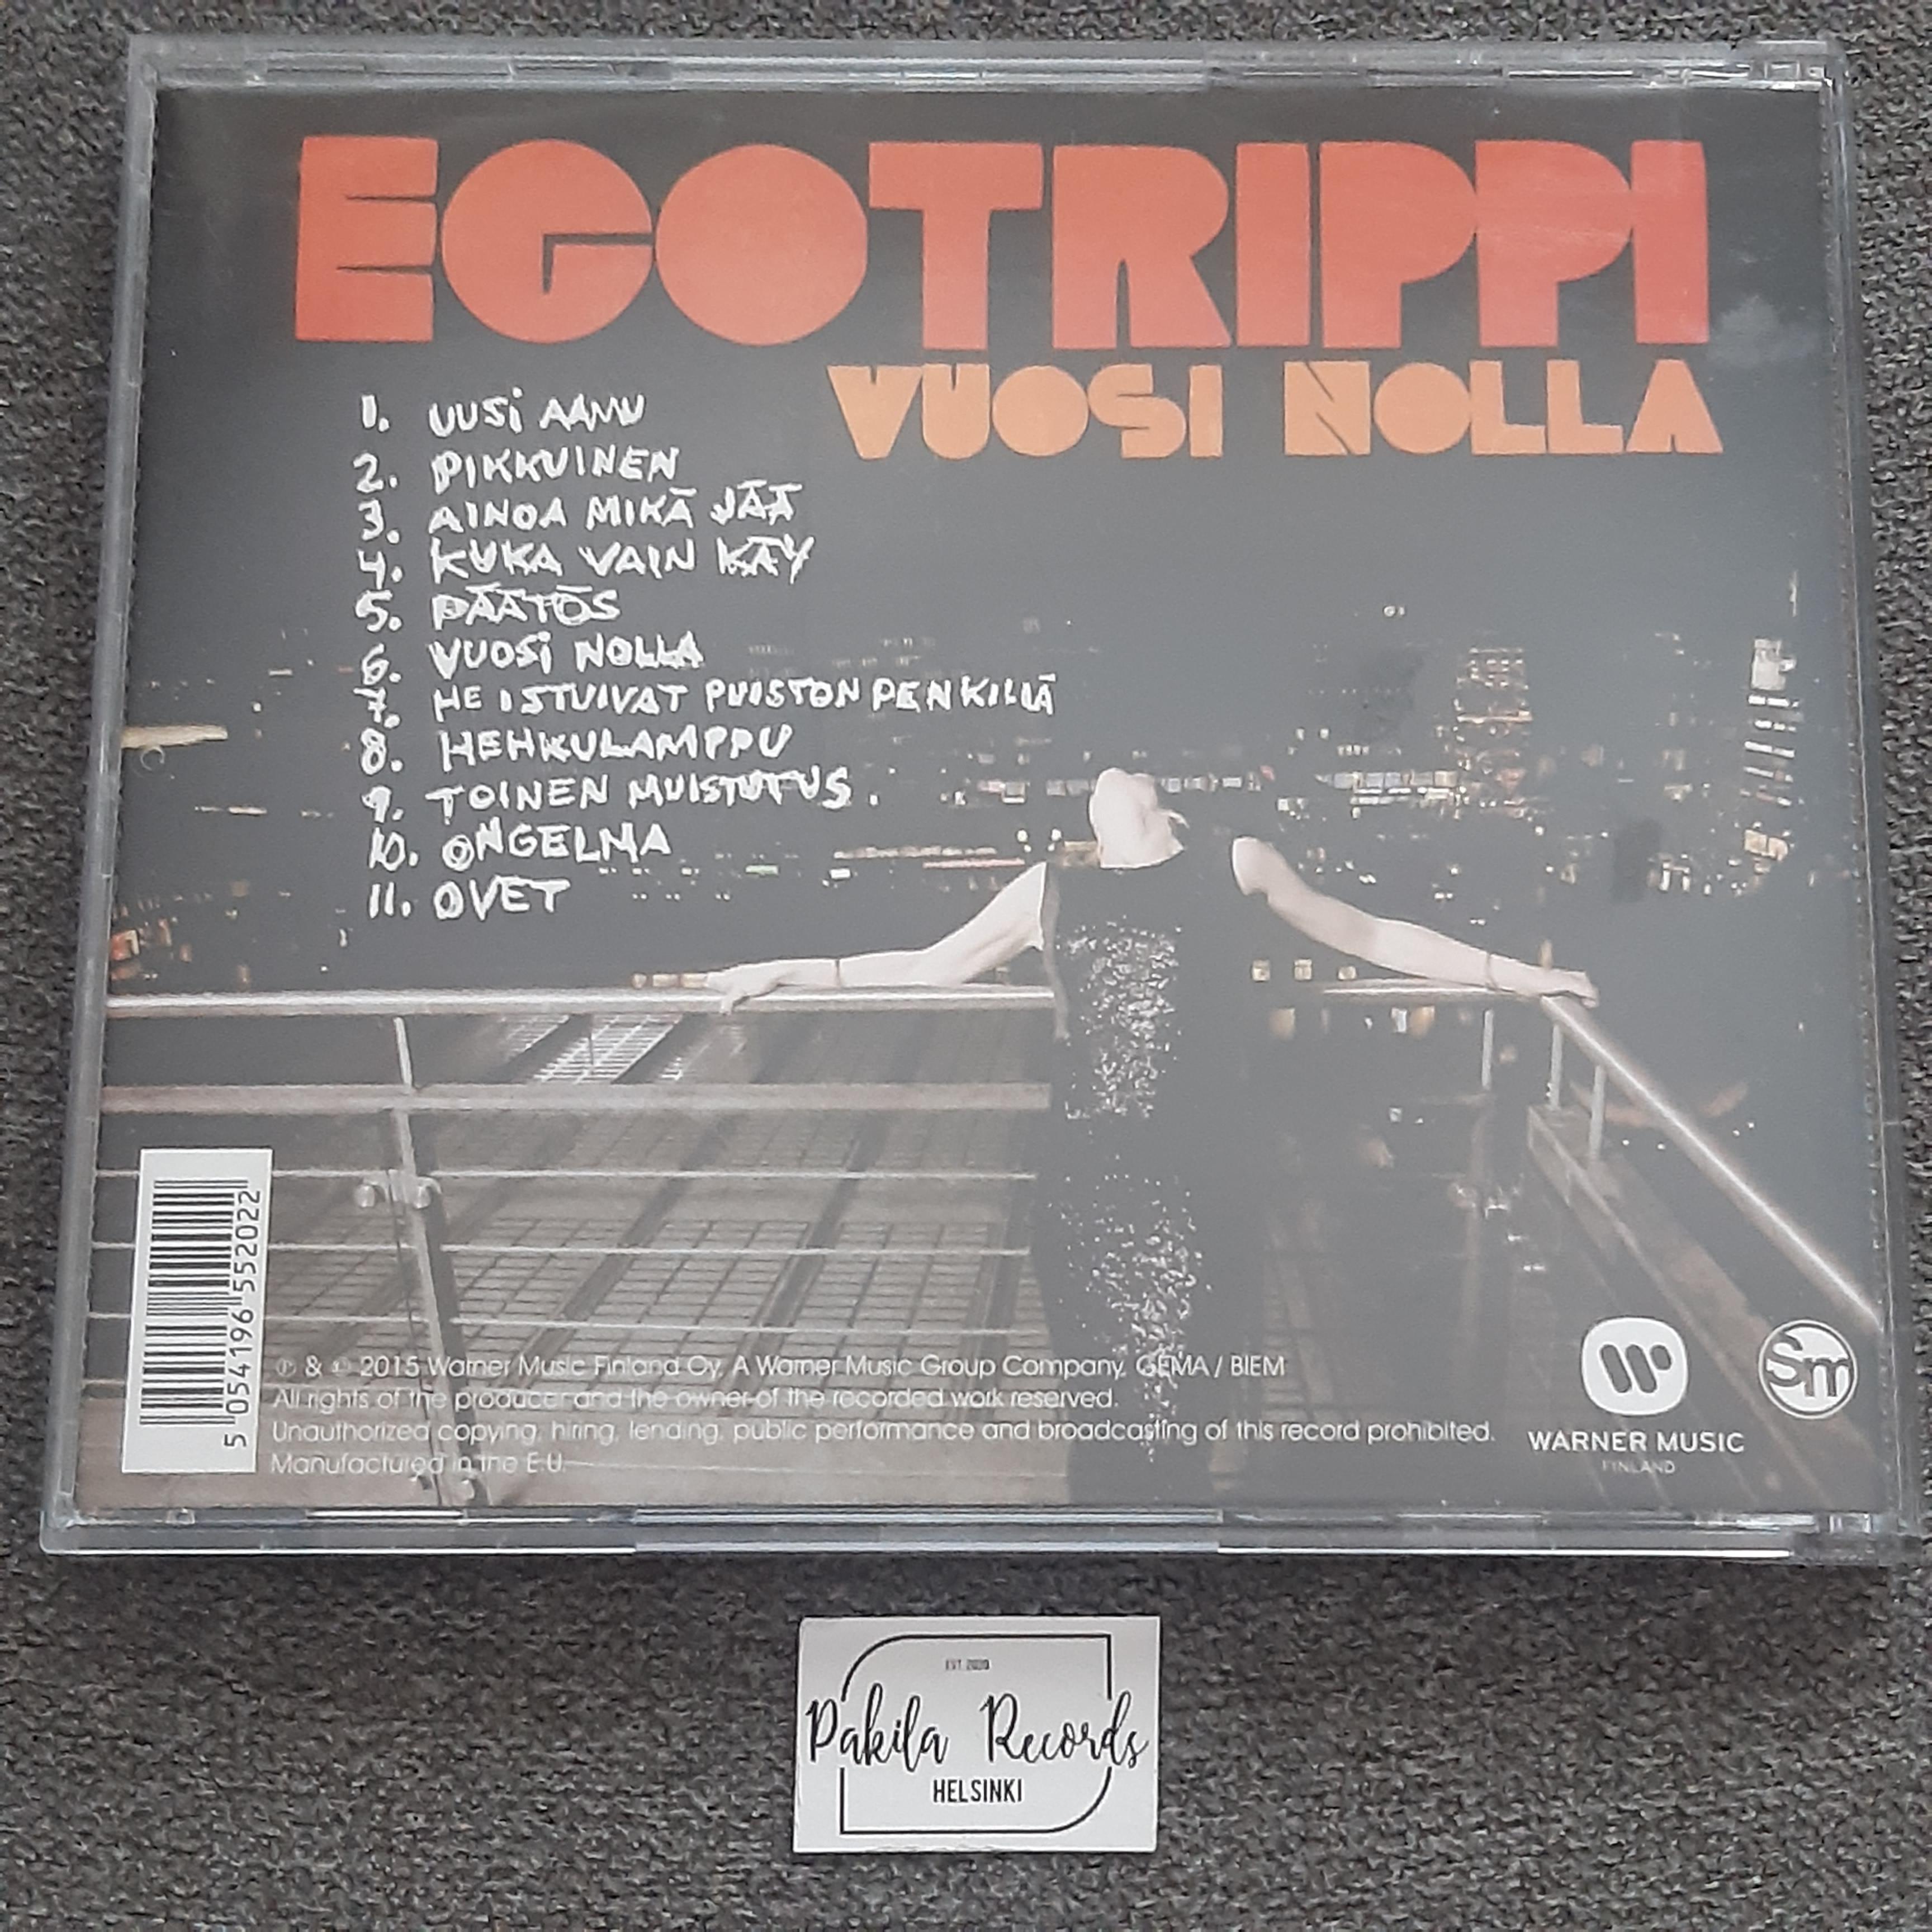 Egotrippi - Vuosi nolla - CD (käytetty)